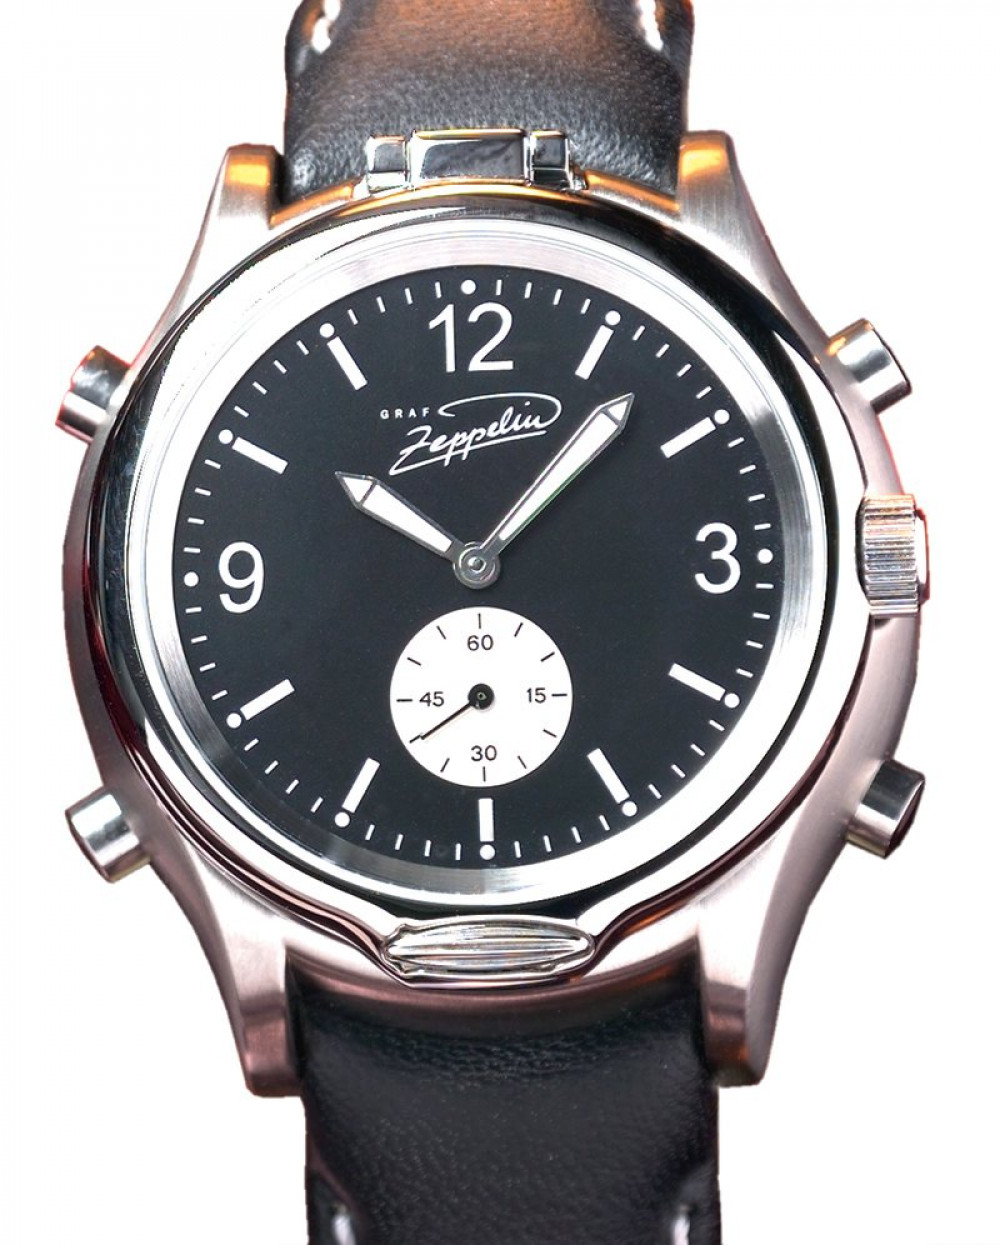 Zegarek firmy Point Tec, model Graf Zeppelin